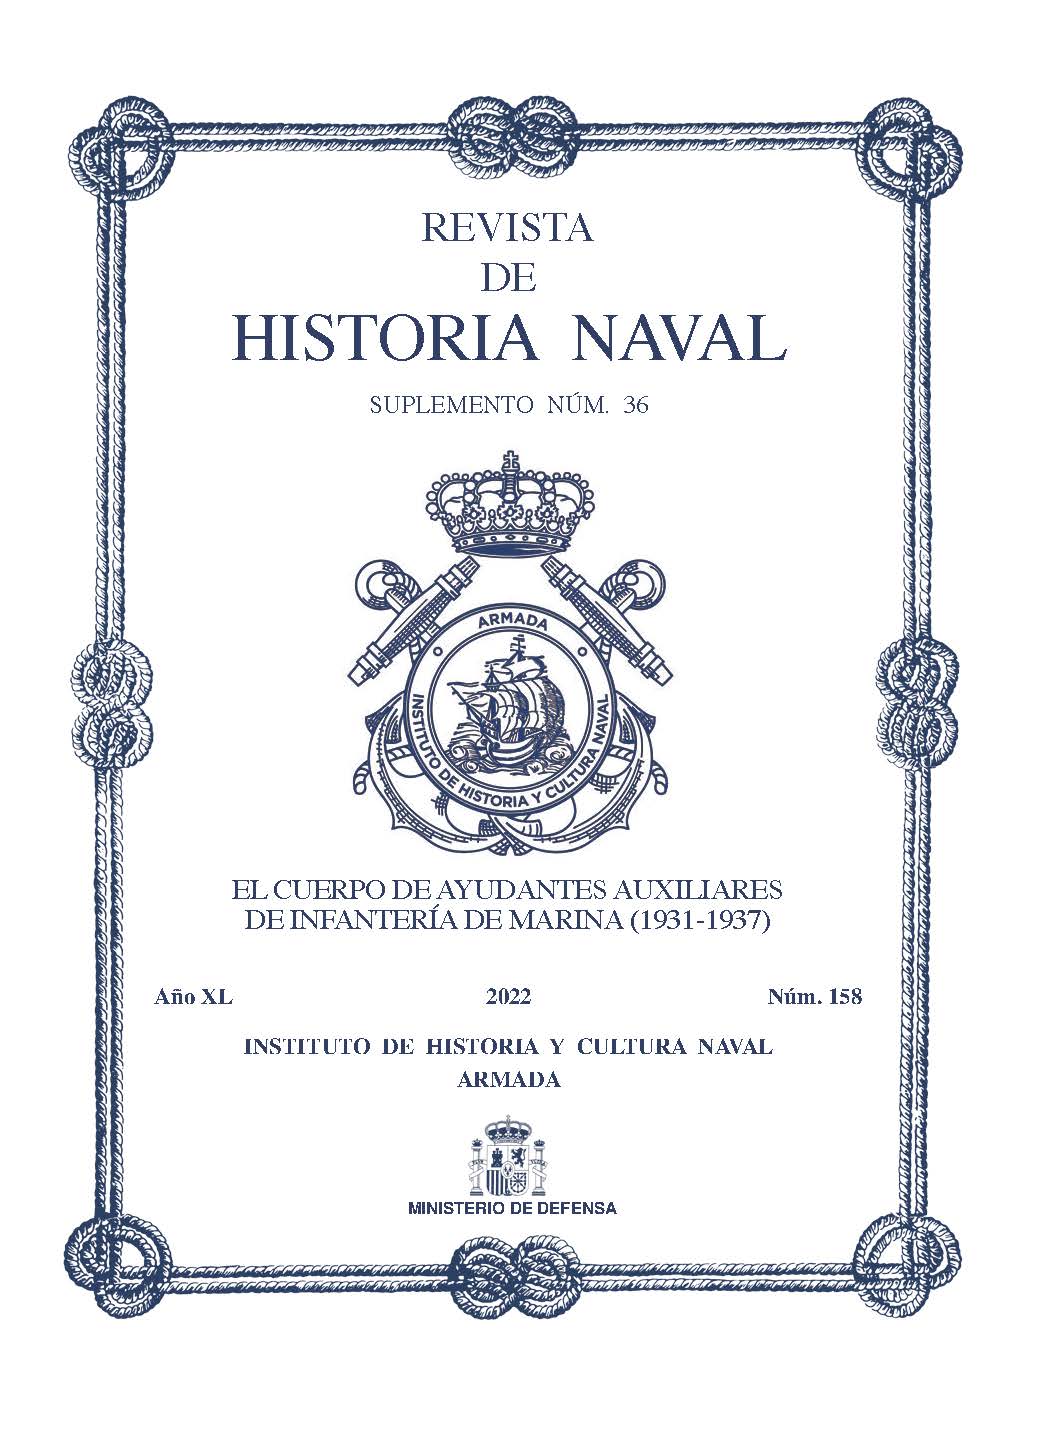 Revista de Historia Naval N.º158 Suplemento N.º 36